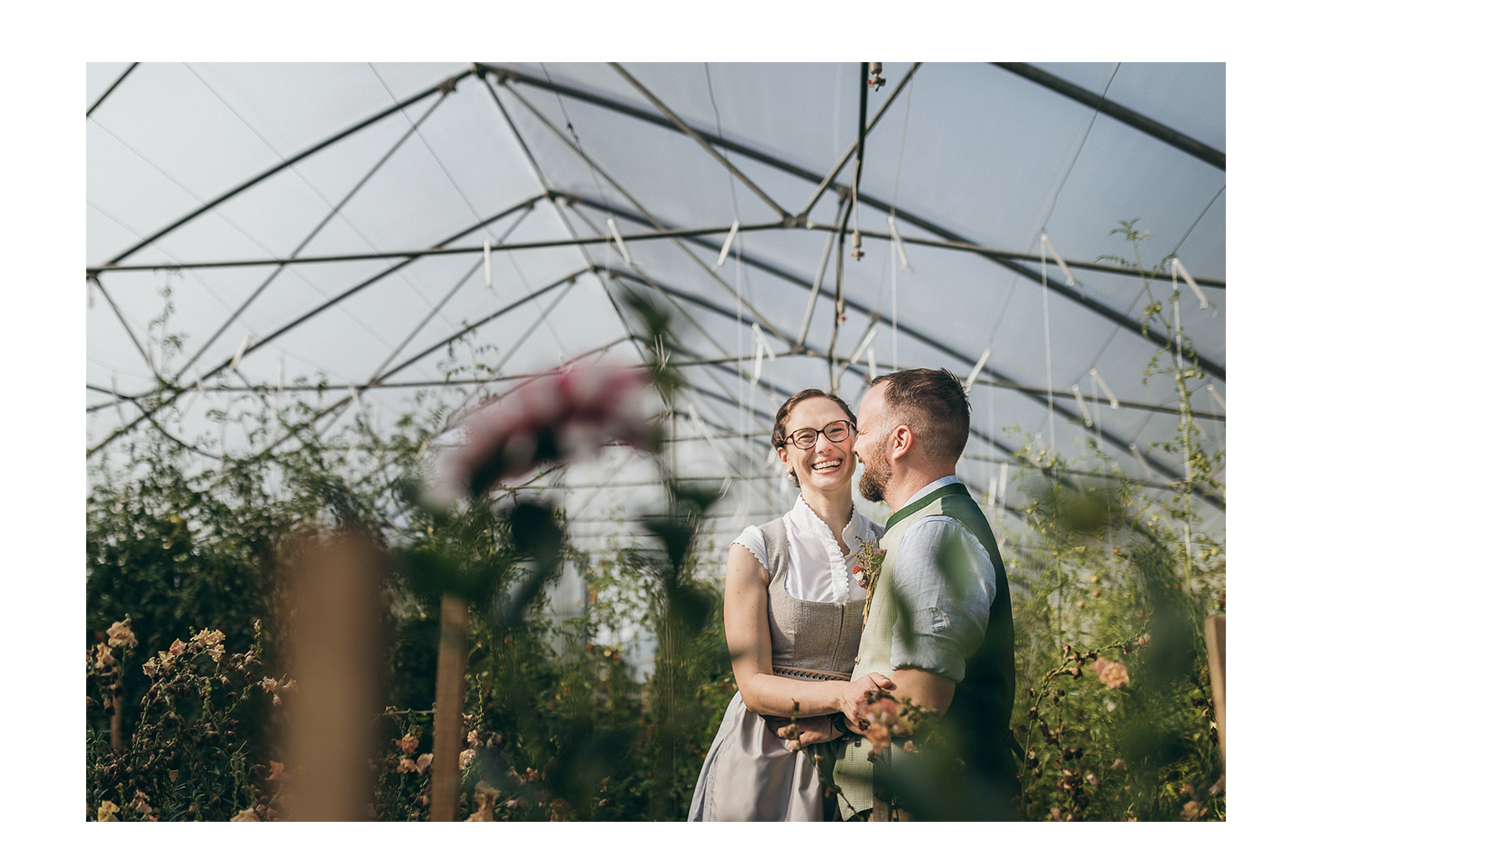 Brautpaar-Shooting im Blumenfeld, Hochzeitsfotograf Vom Hügel